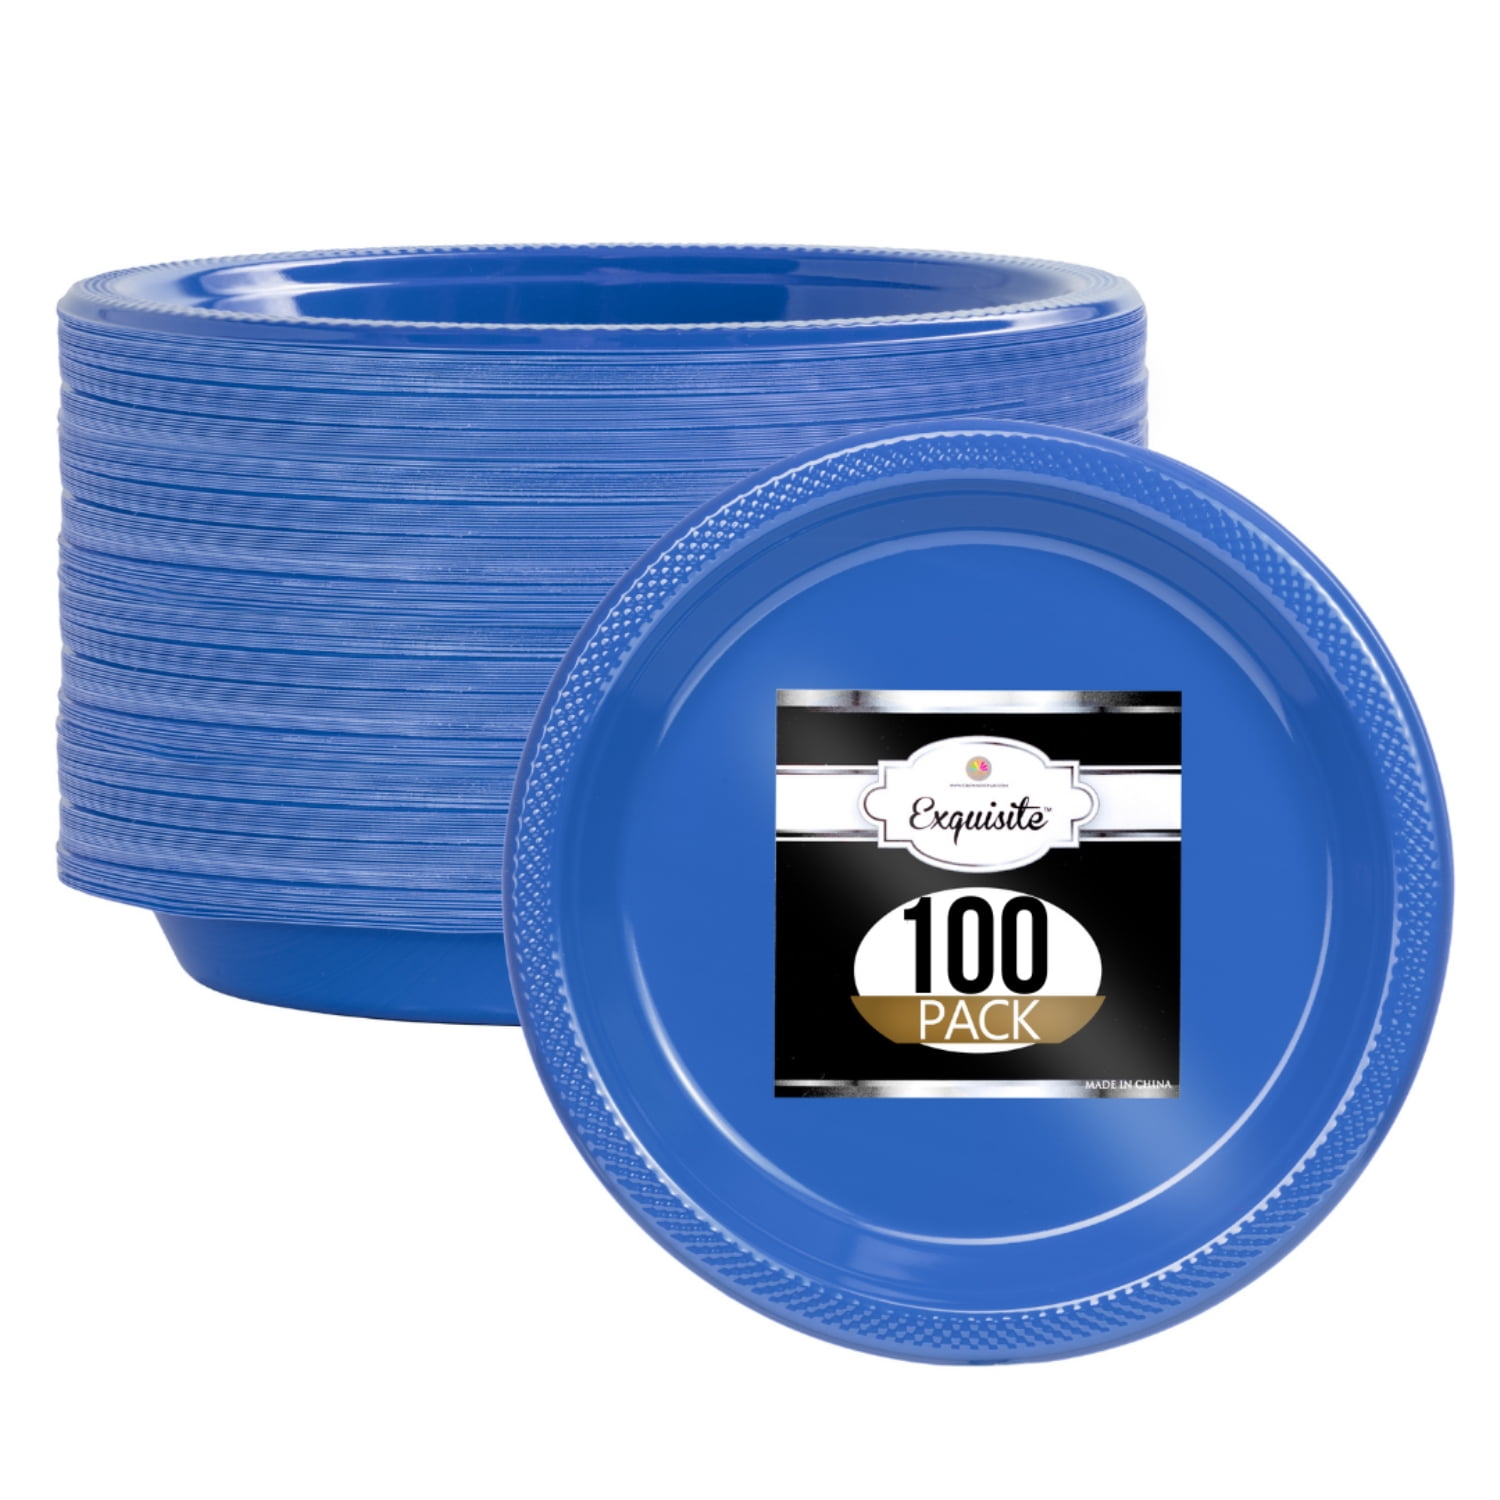 7 Disposable Plastic Plates Bulk - 100 Count Party Pack - Premium Plastic  Disposable Dessert/Salad Plates, Blue